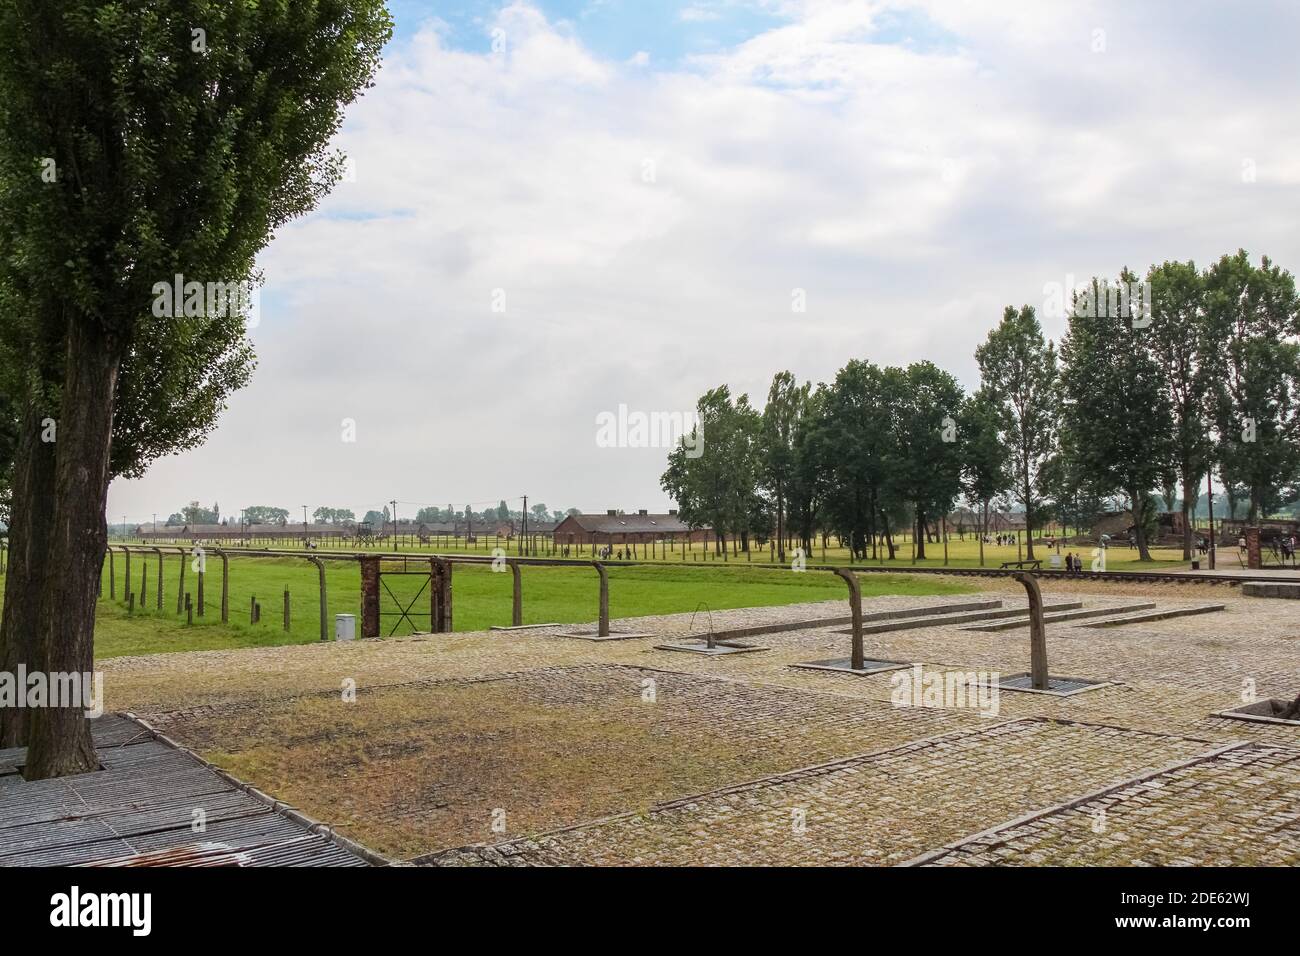 Auschwitz, Pologne - 30 juillet 2018 : restes de chambres à gaz au camp de concentration d'Auschwitz Birkenau, Pologne Banque D'Images